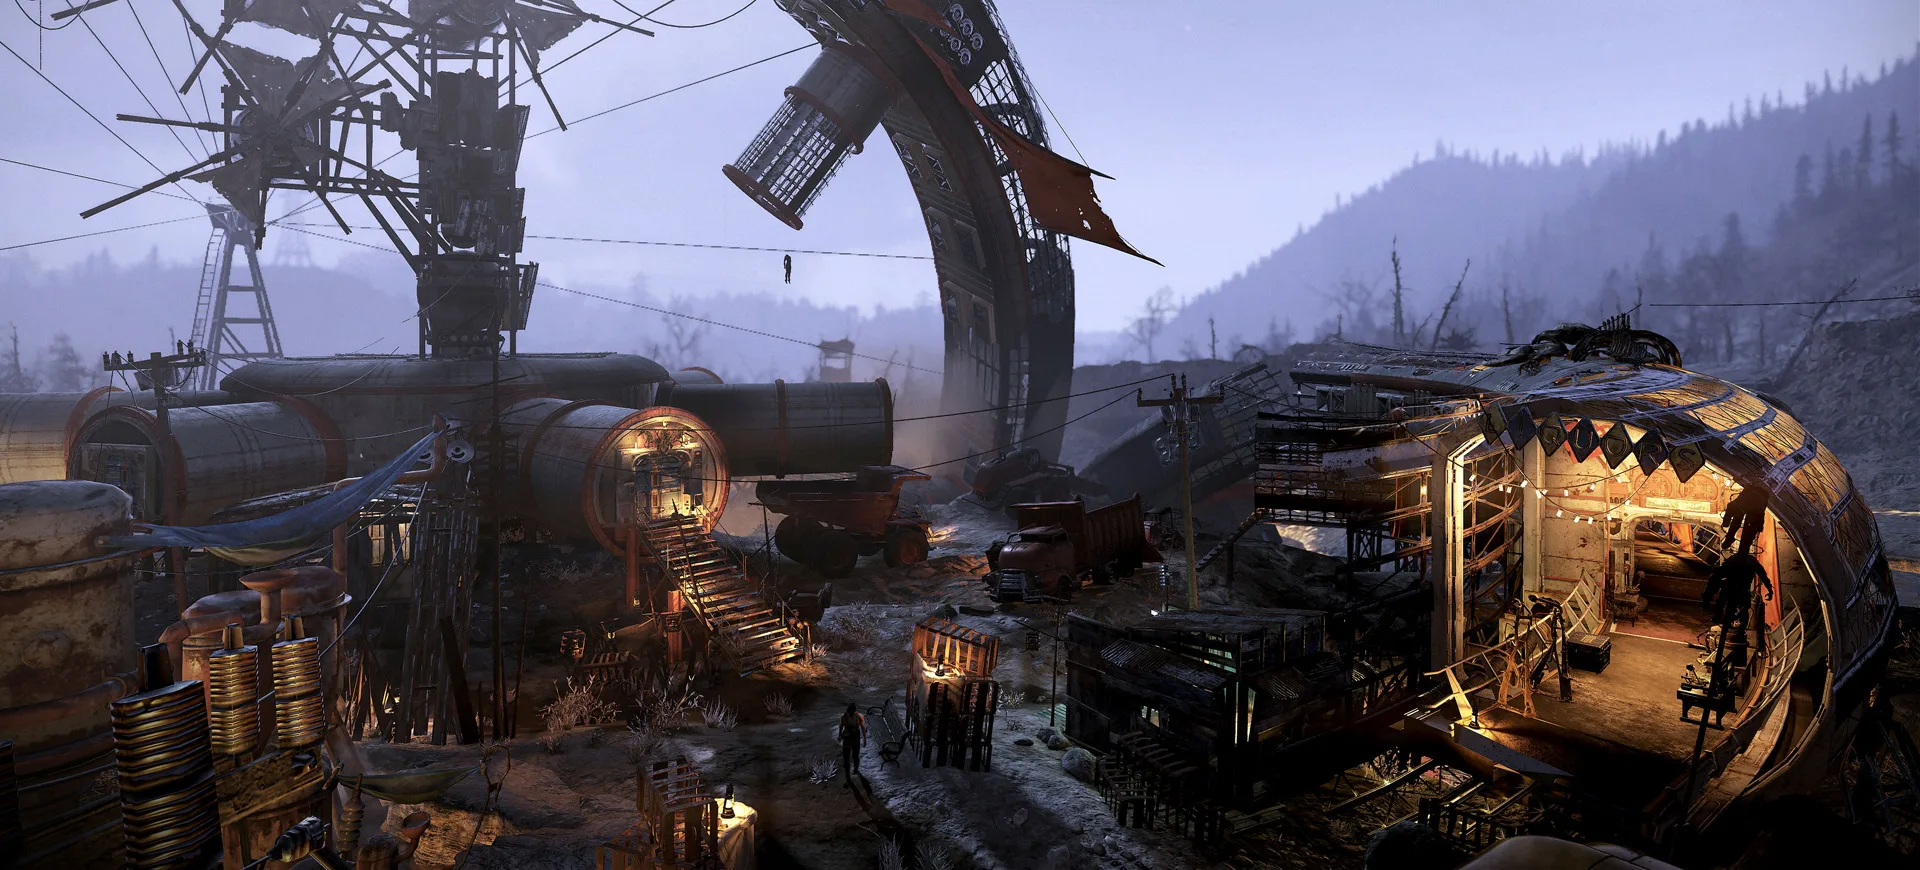 Fallout 76 Inside The Vault Wastelanders のお知らせと評判システムについて